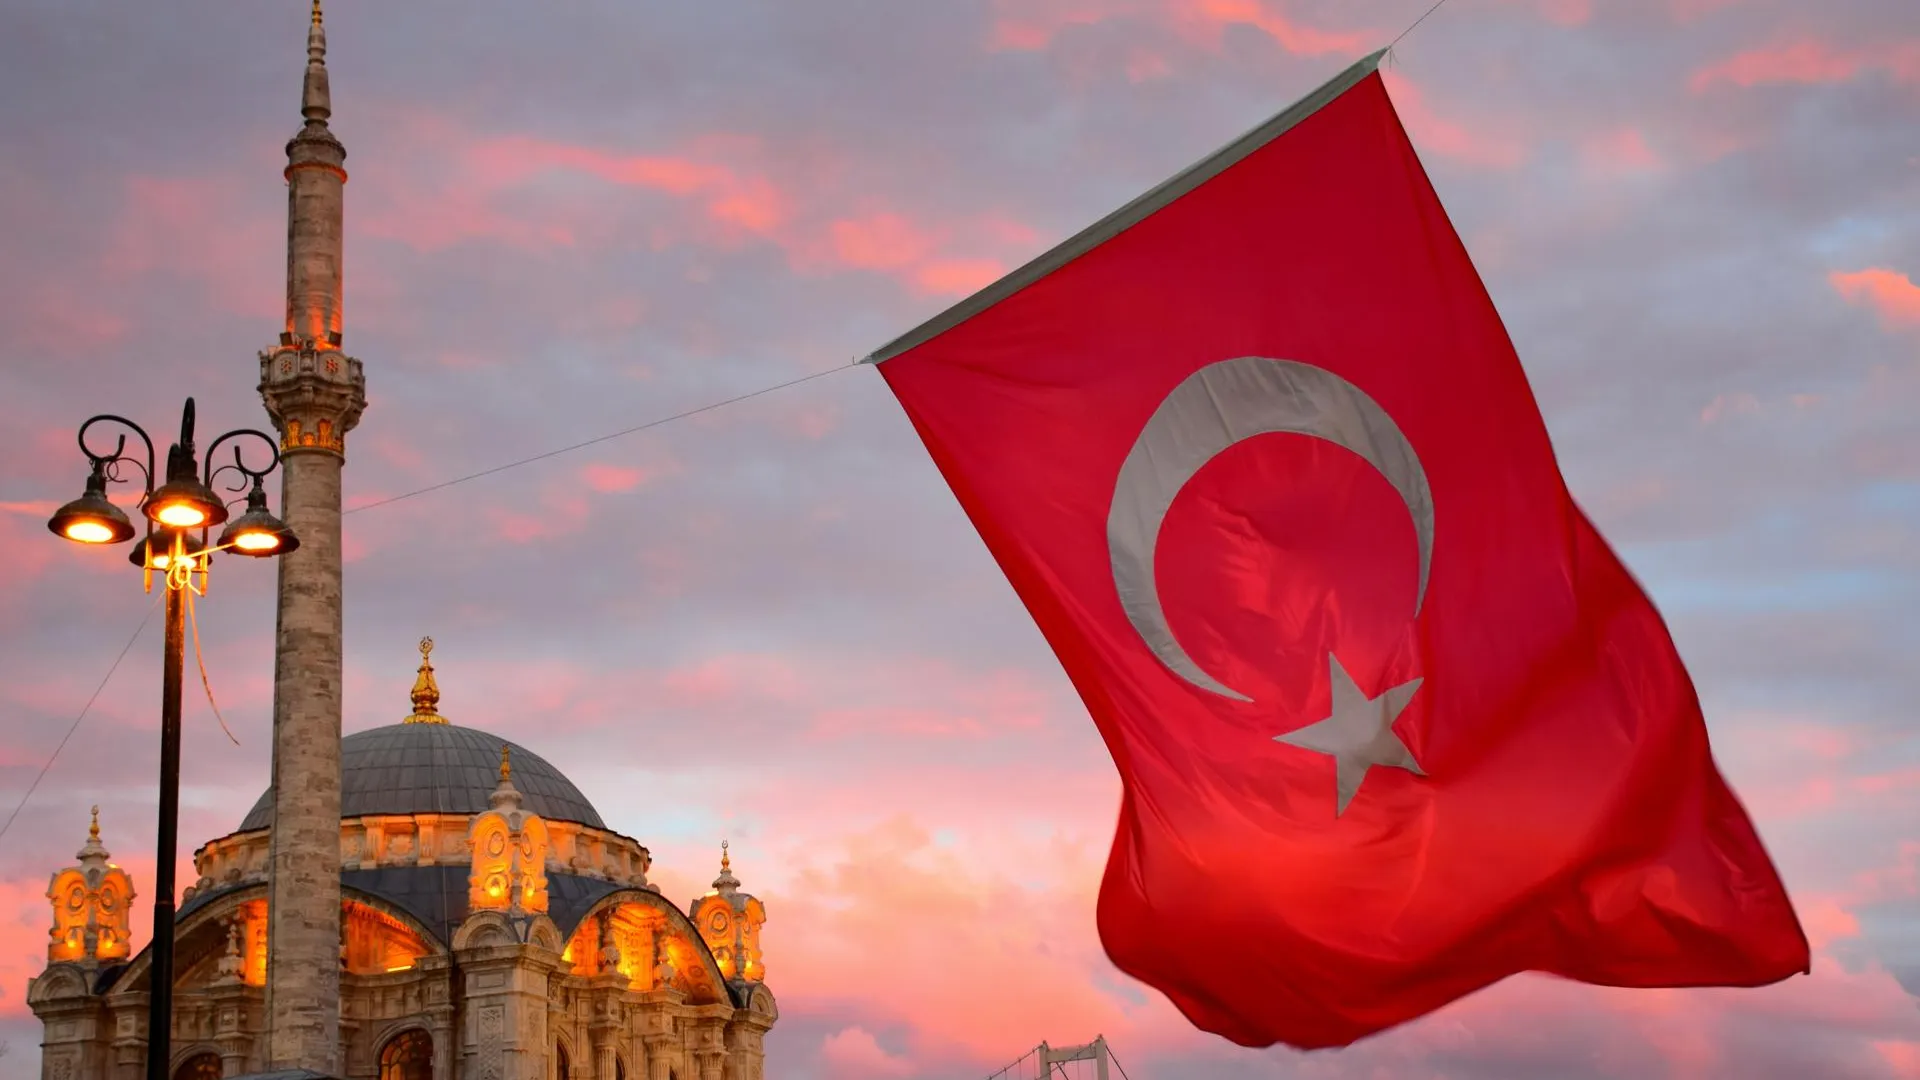 Турэксперт рассказал, стоит ли ждать снижения цен на путевки в Турцию этой осенью